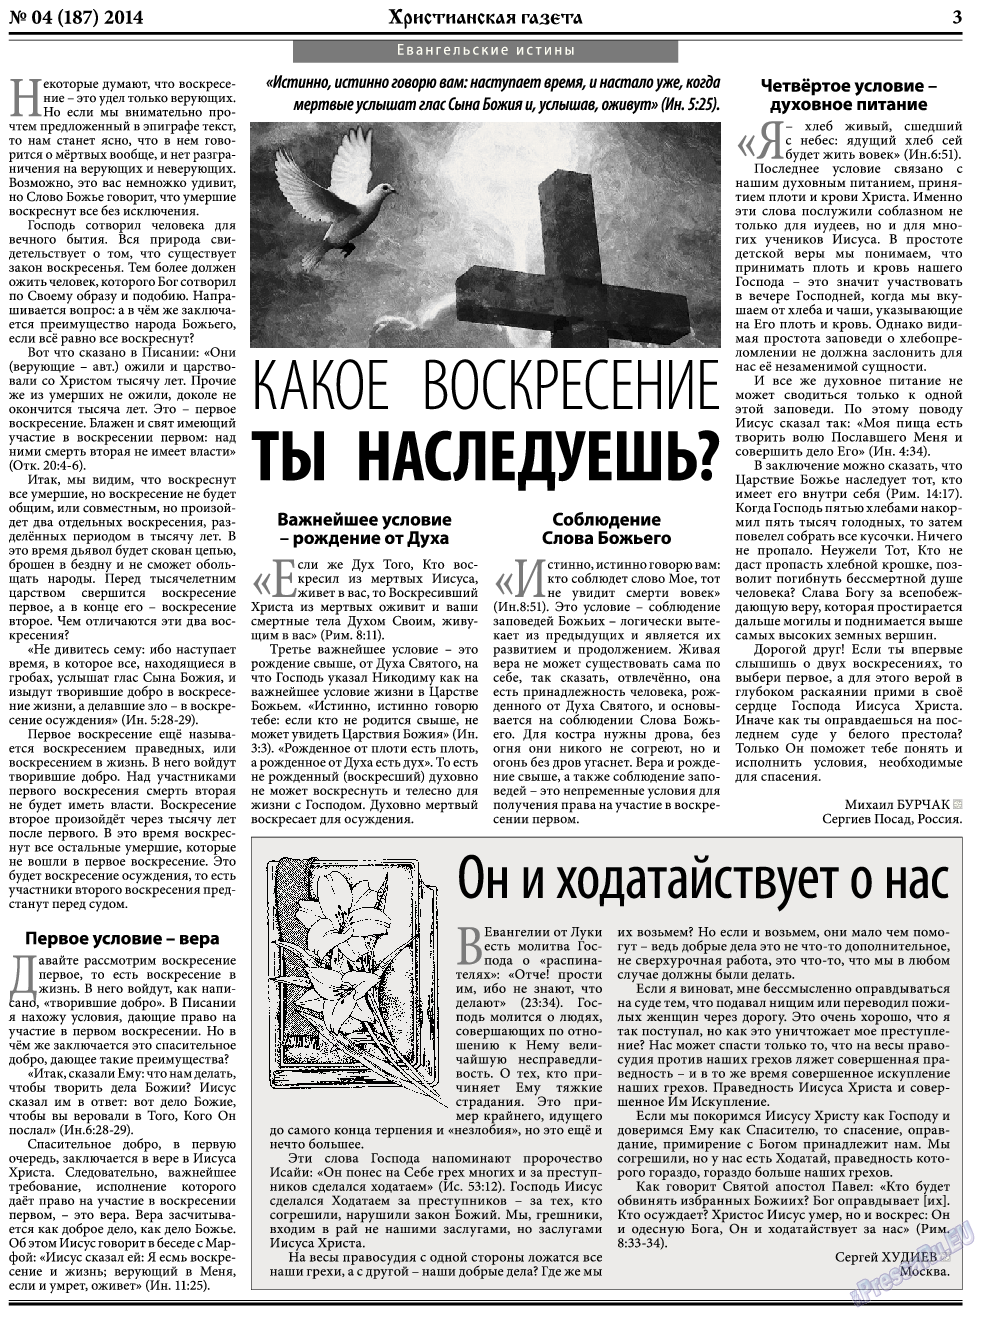 Христианская газета, газета. 2014 №4 стр.3